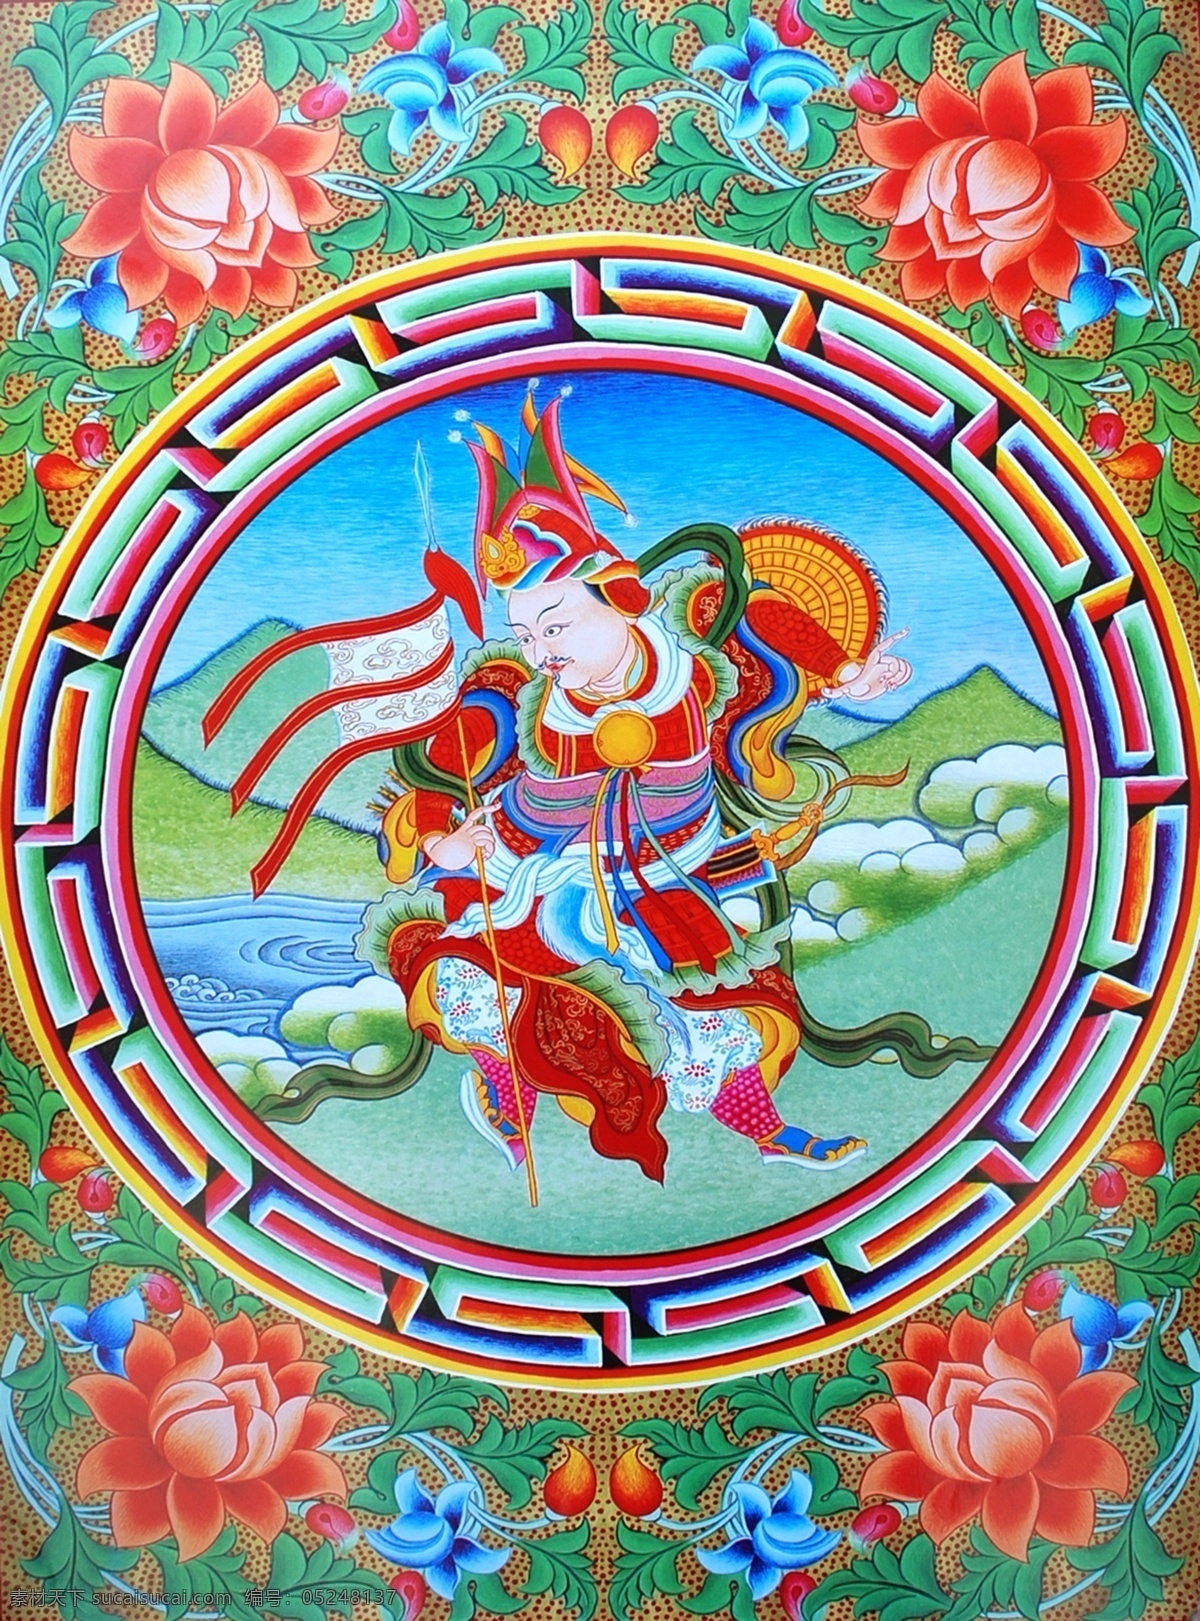 无框画 佛教 手绘 墙画 壁画 卧室画 绘画 吉祥 图案 藏族 宗教 和平 平安 宗教设计 藏族传统图案 格萨尔 英雄 绘画书法 文化艺术